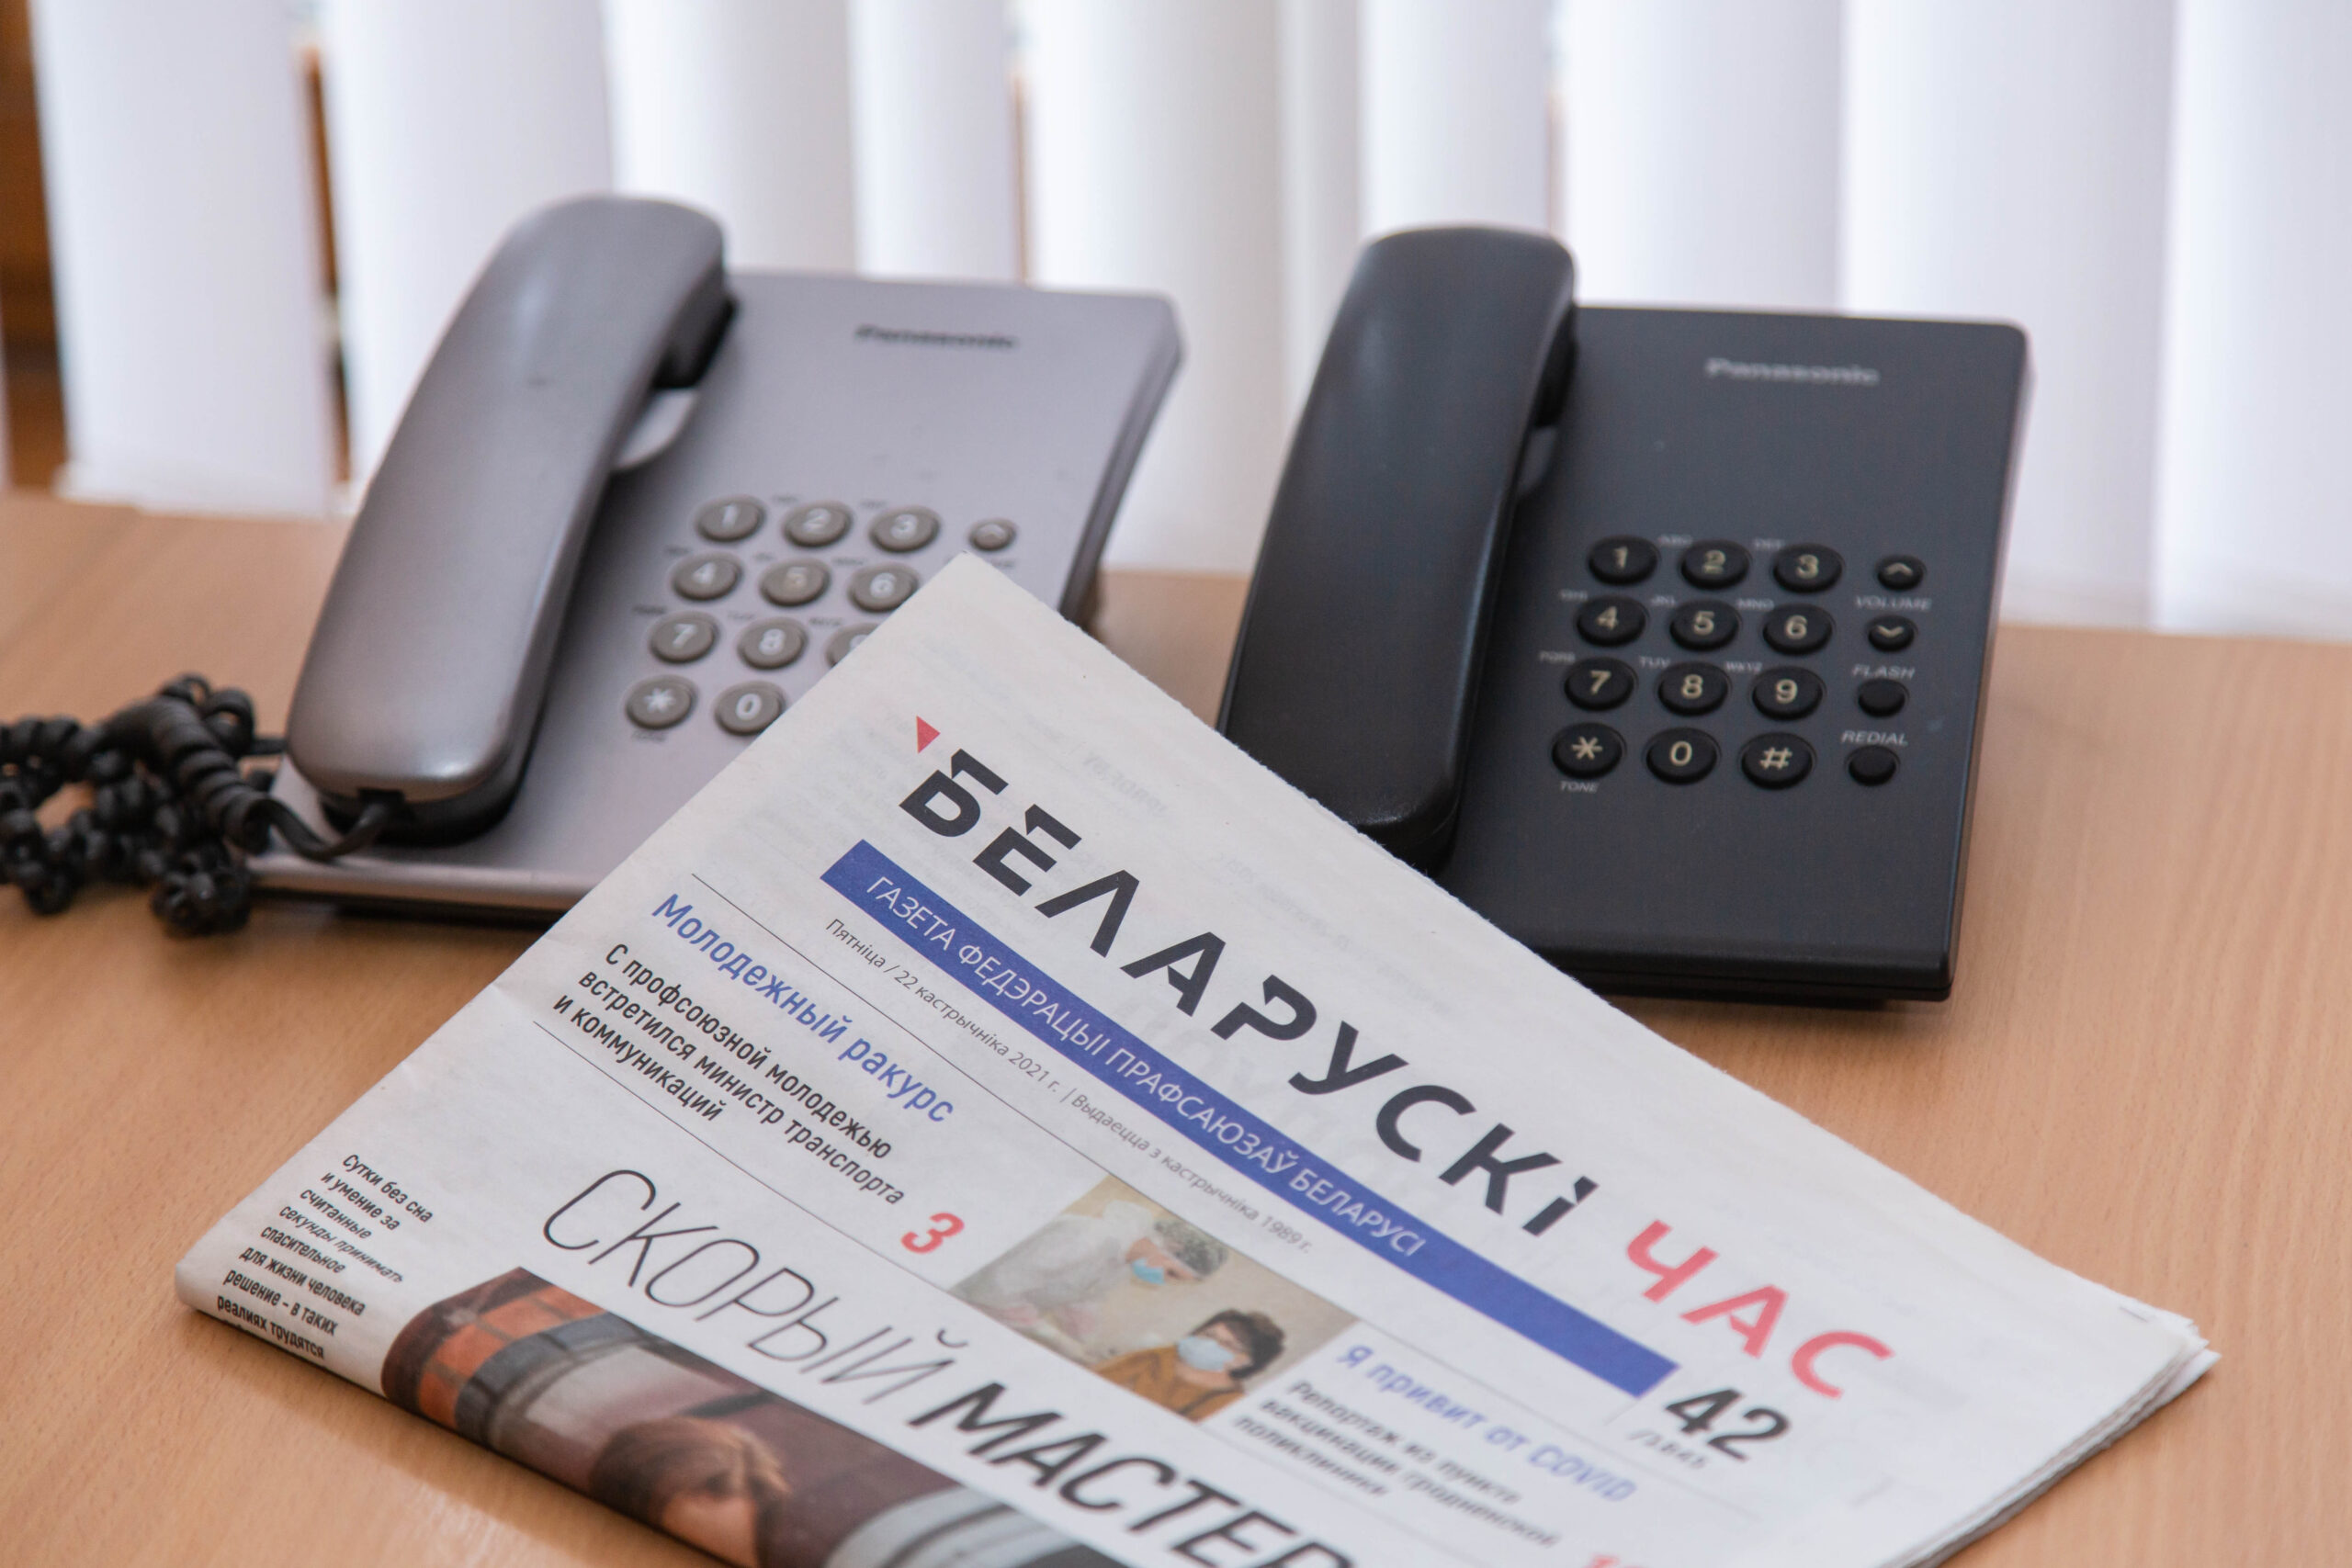 Что изменится в беларуси с 1 апреля. Телефон для обращения граждан. Телефоны в Белоруссии forgive me.